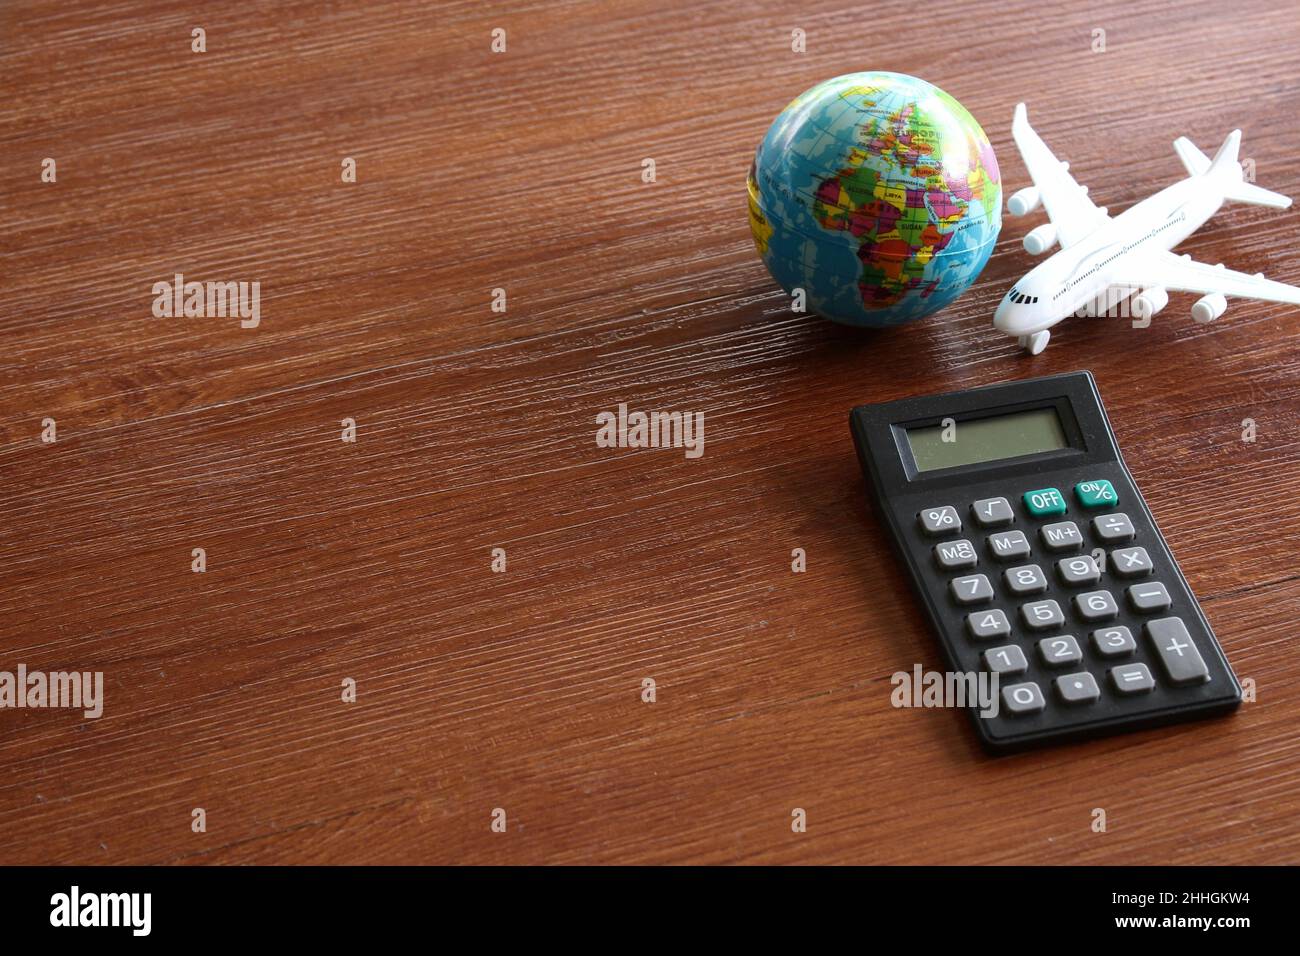 Concetto di calcolo dei costi di viaggio. Piano giocattolo, globo terrestre e calcolatrice su tavola di legno. Foto Stock